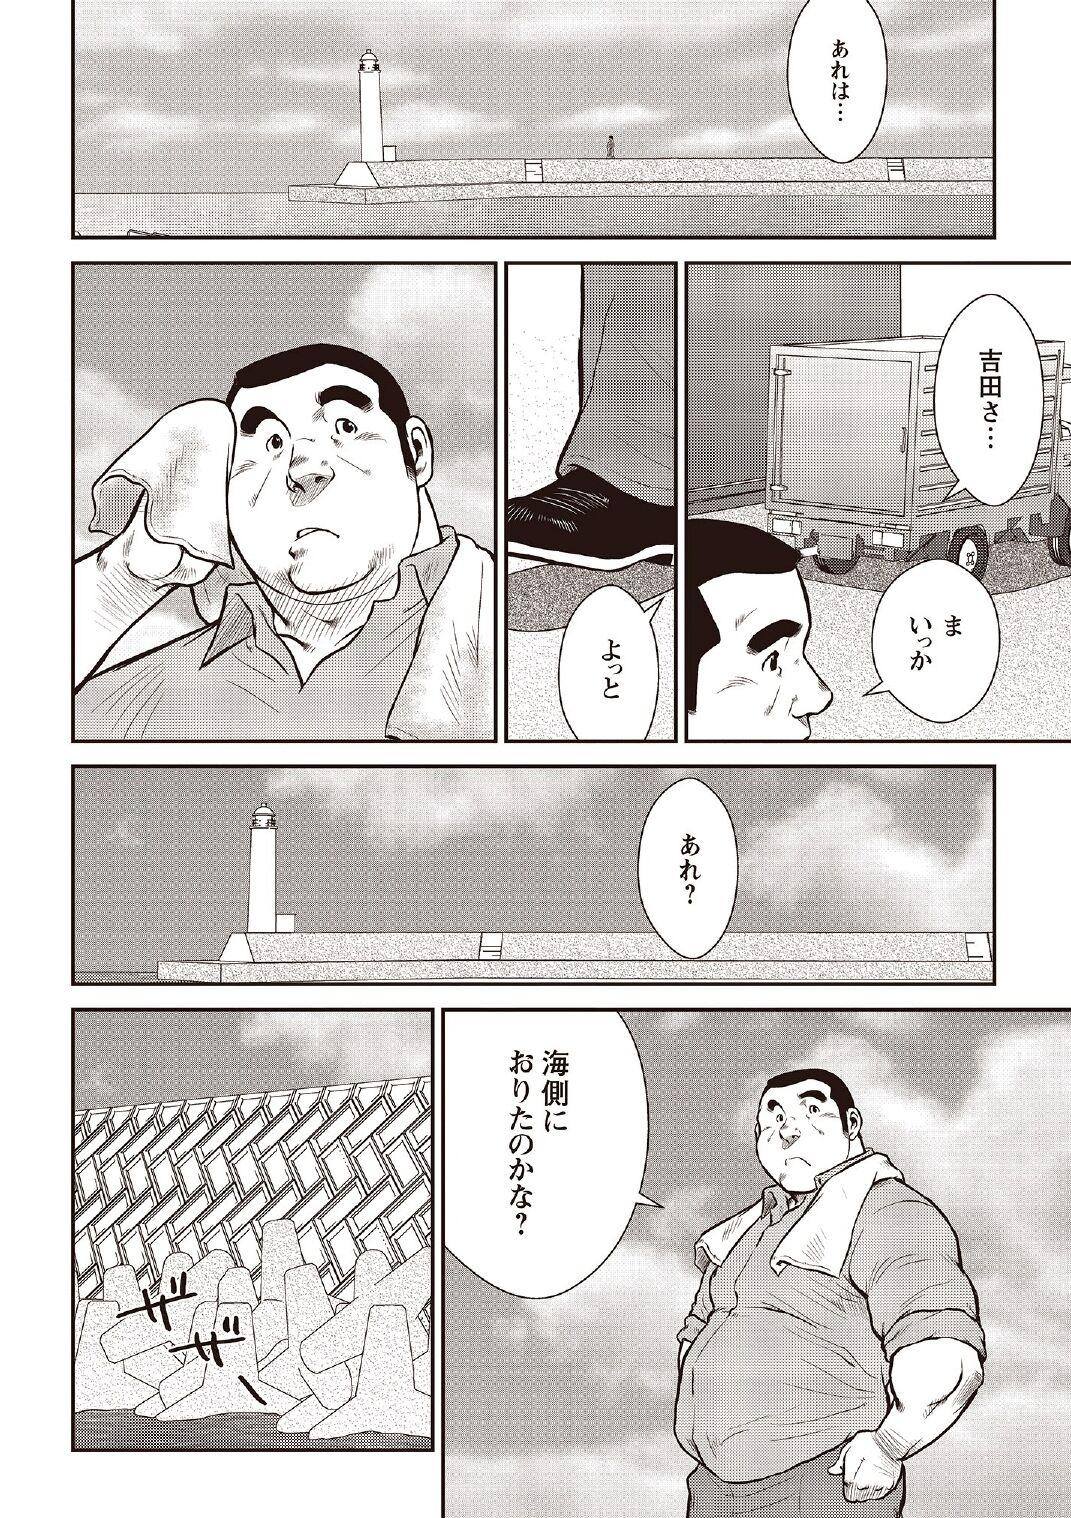 [Ebisubashi Seizou] Ebisubashi Seizou Tanpen Manga Shuu 2 Fuuun! Danshi Ryou [Bunsatsuban] PART 2 Bousou Hantou Taifuu Zensen Ch. 1 + Ch. 2 [Digital] 11